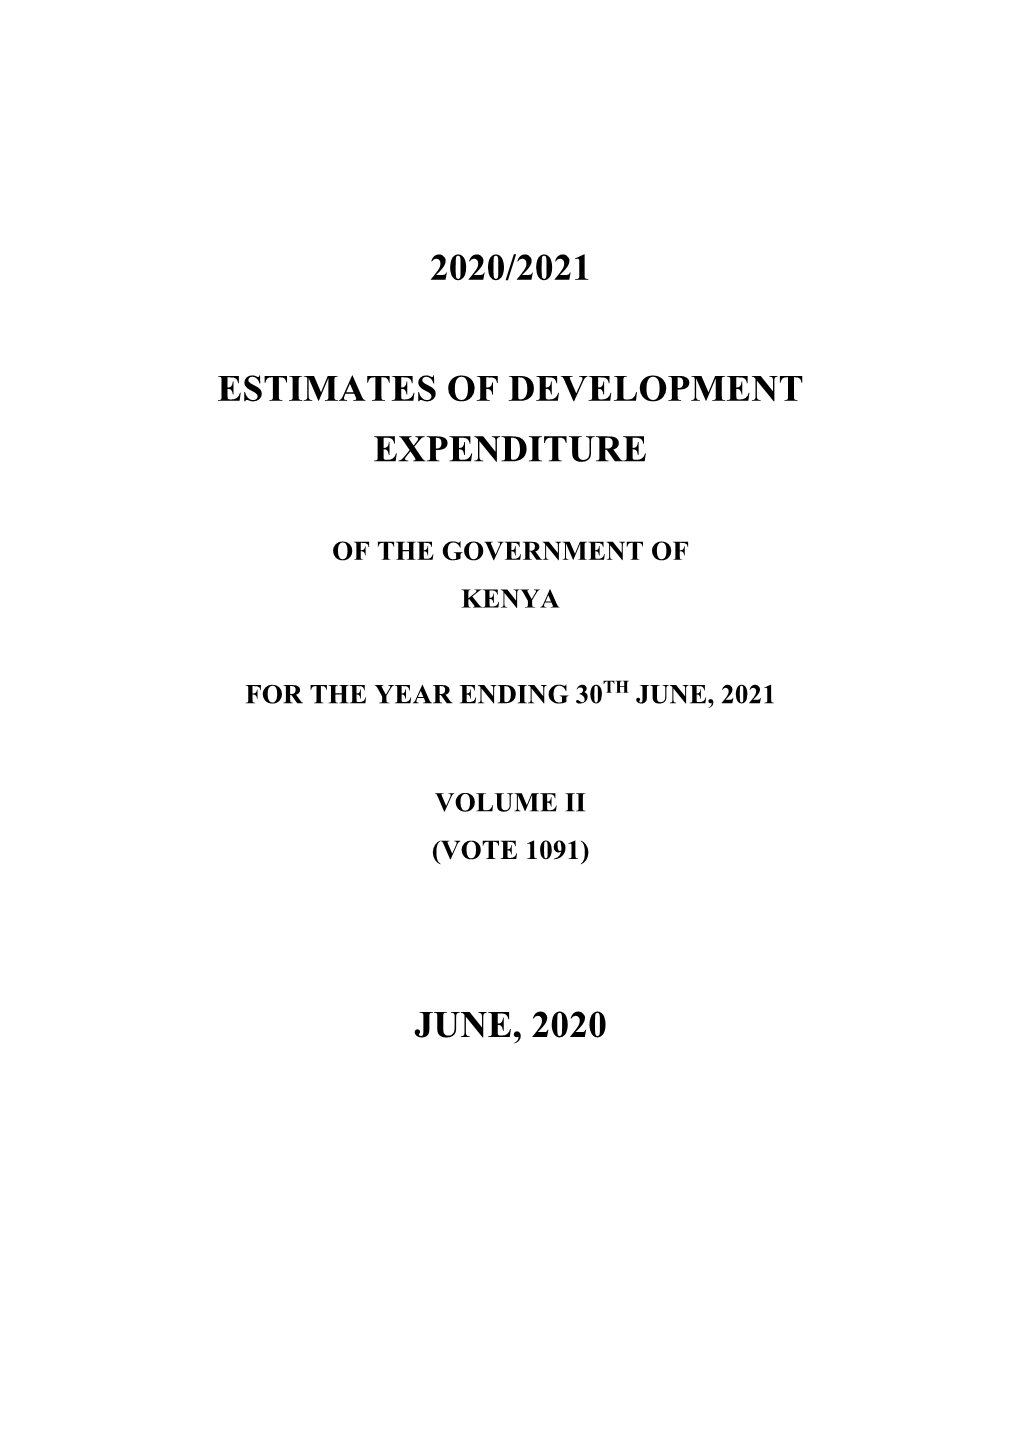 2020/2021 Estimates of Development Expenditure